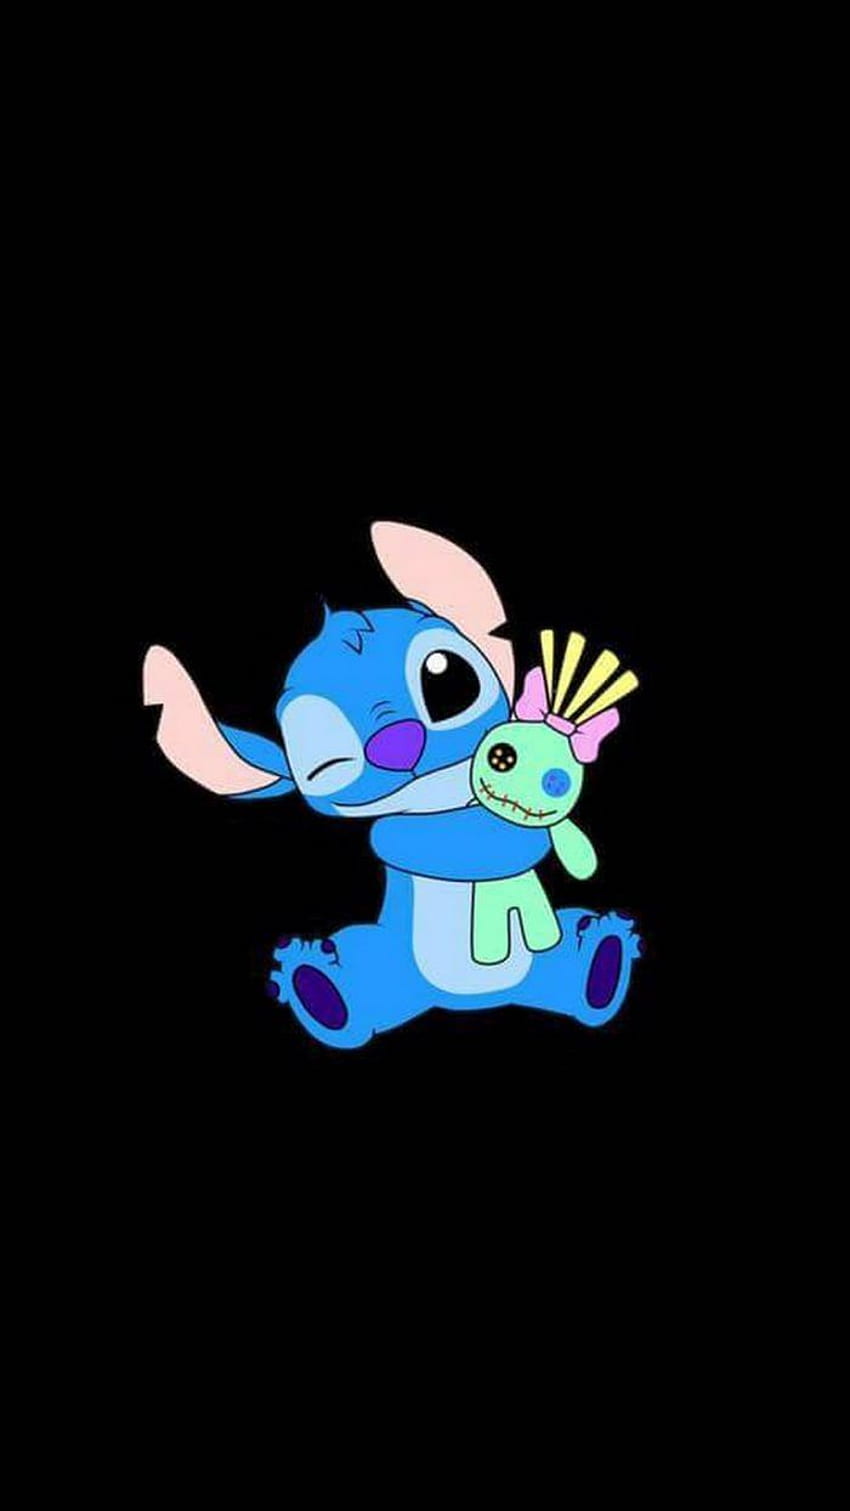 Stitch Android sẽ khiến Smartphone của bạn trở nên đáng yêu hơn bao giờ hết. Đây sẽ là sự lựa chọn tuyệt vời cho những ai yêu thích Disney và nhân vật Stitch. Hãy tìm hiểu hình ảnh liên quan để được tận hưởng niềm vui đáng yêu.